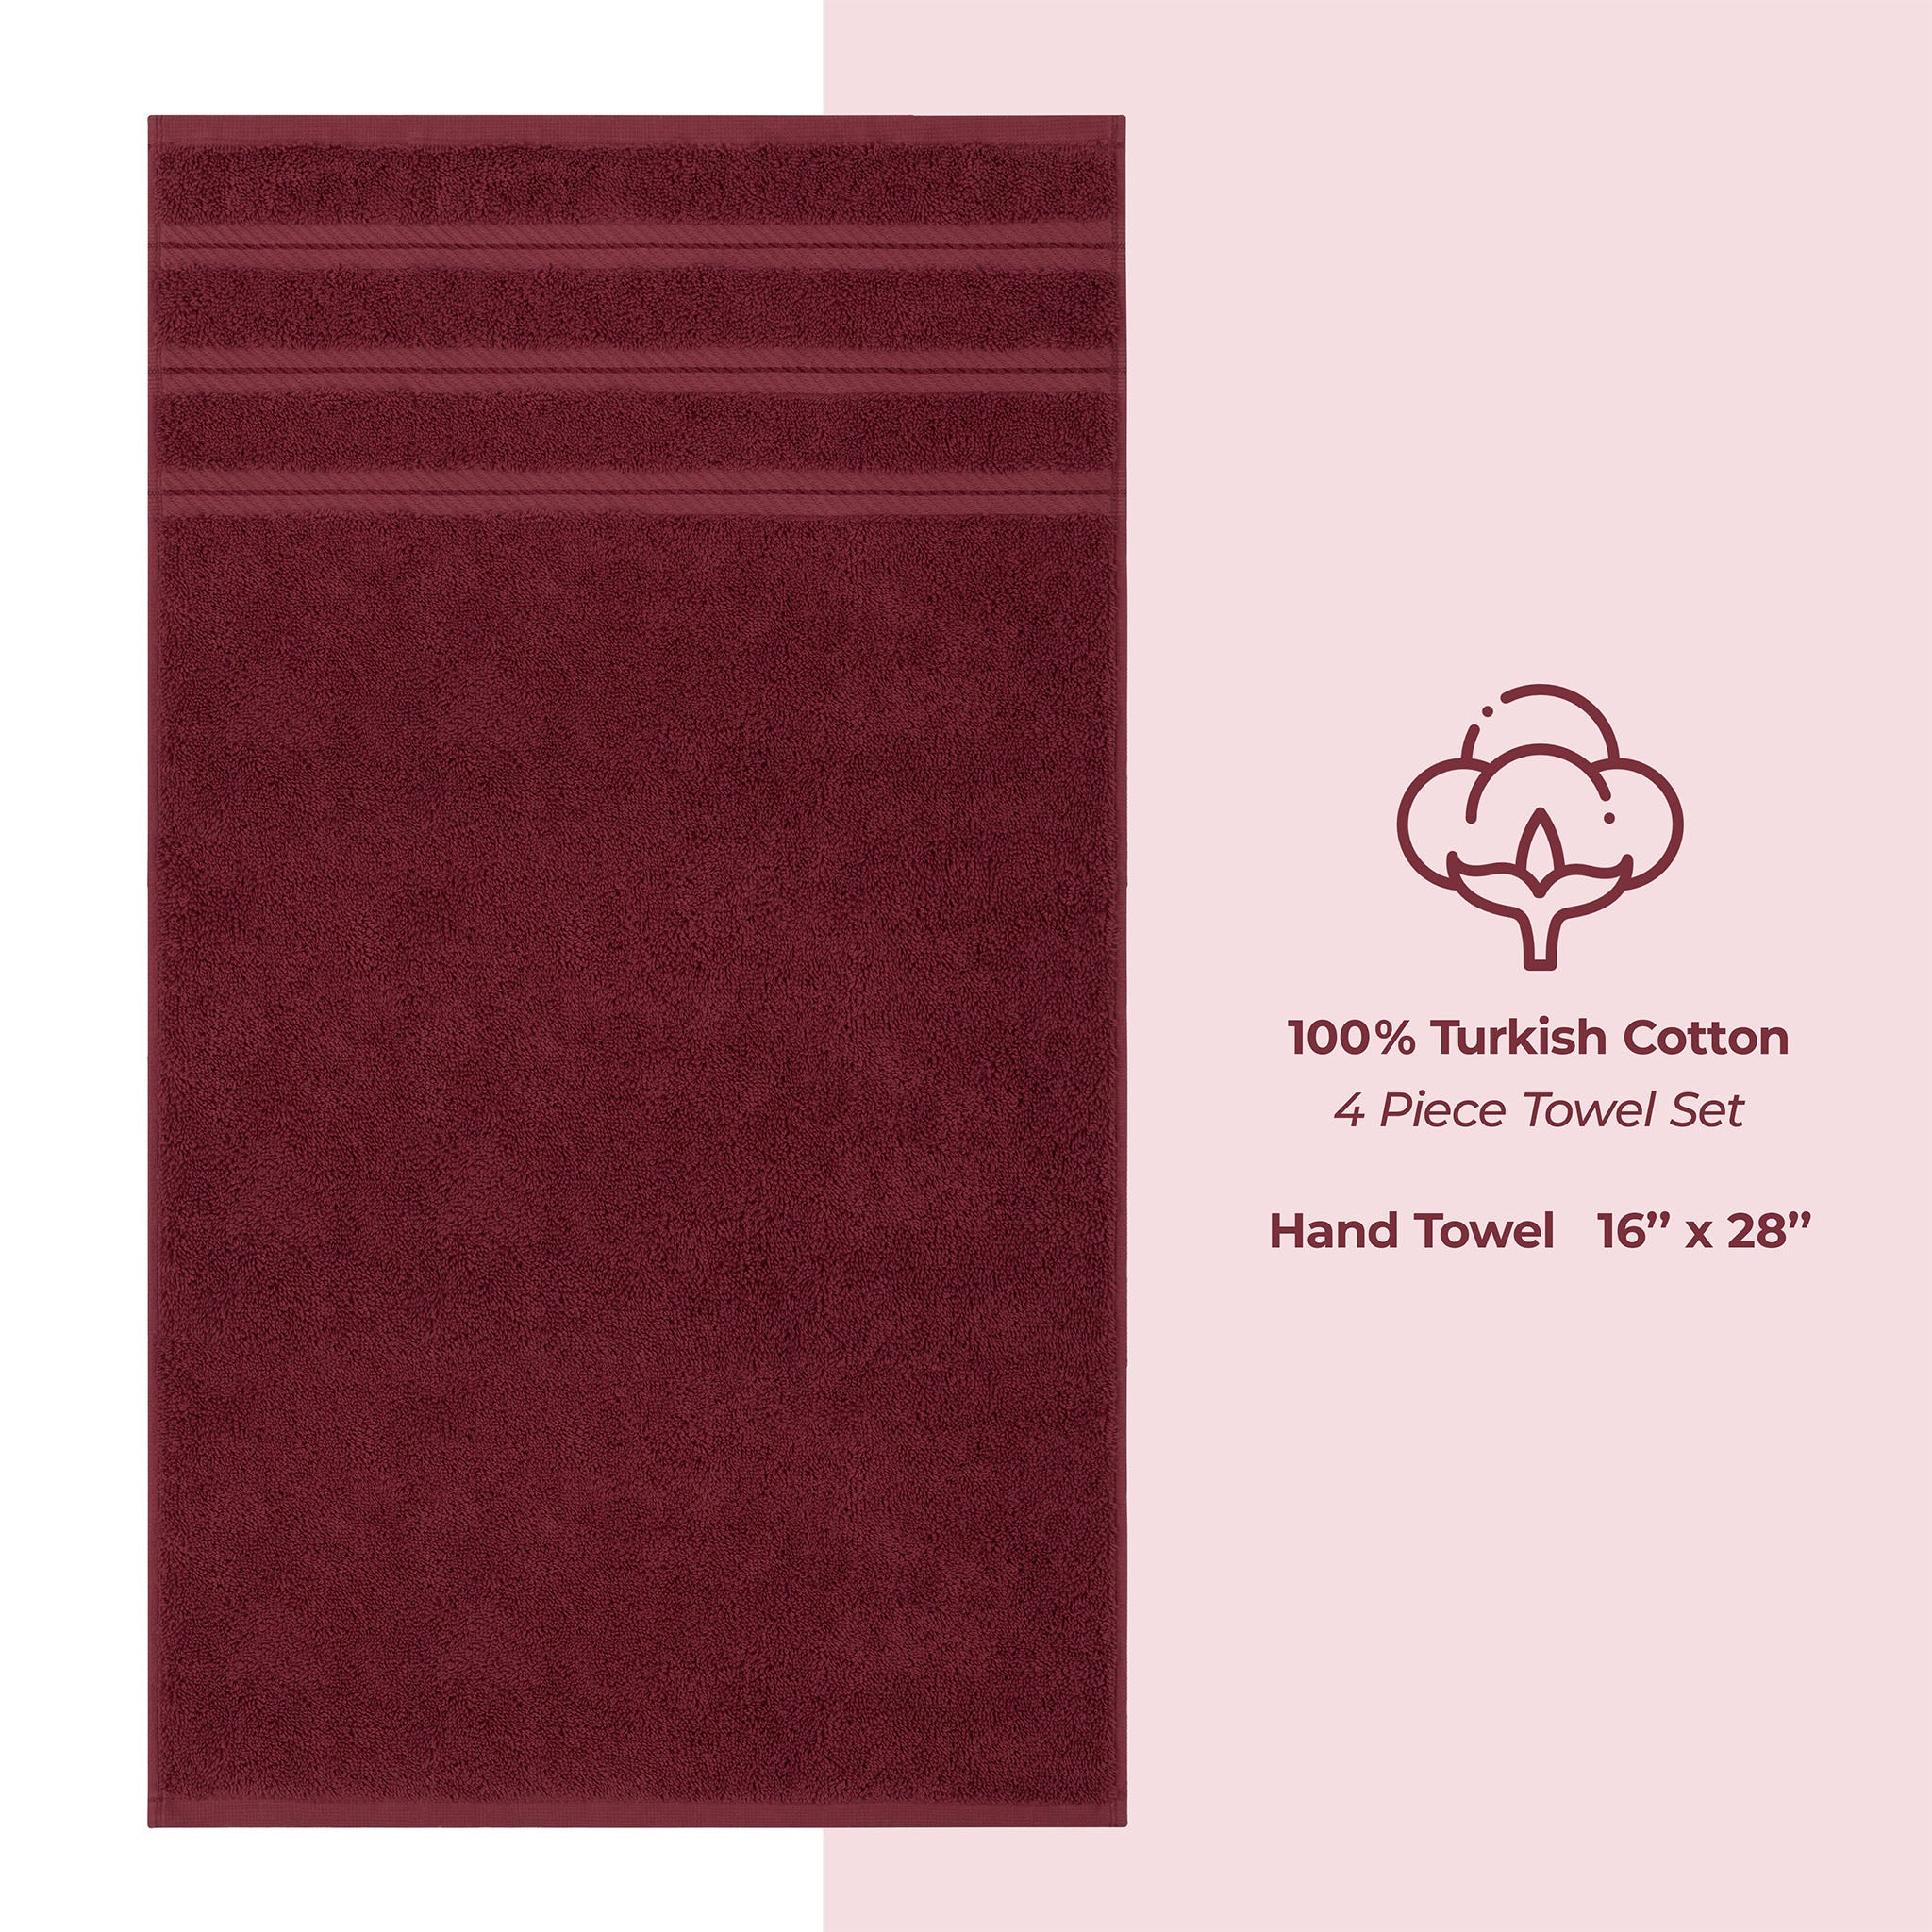 American Soft Linen 100% Turkish Cotton 4 Pack Hand Towel Set Wholesale bordeaux-red-4